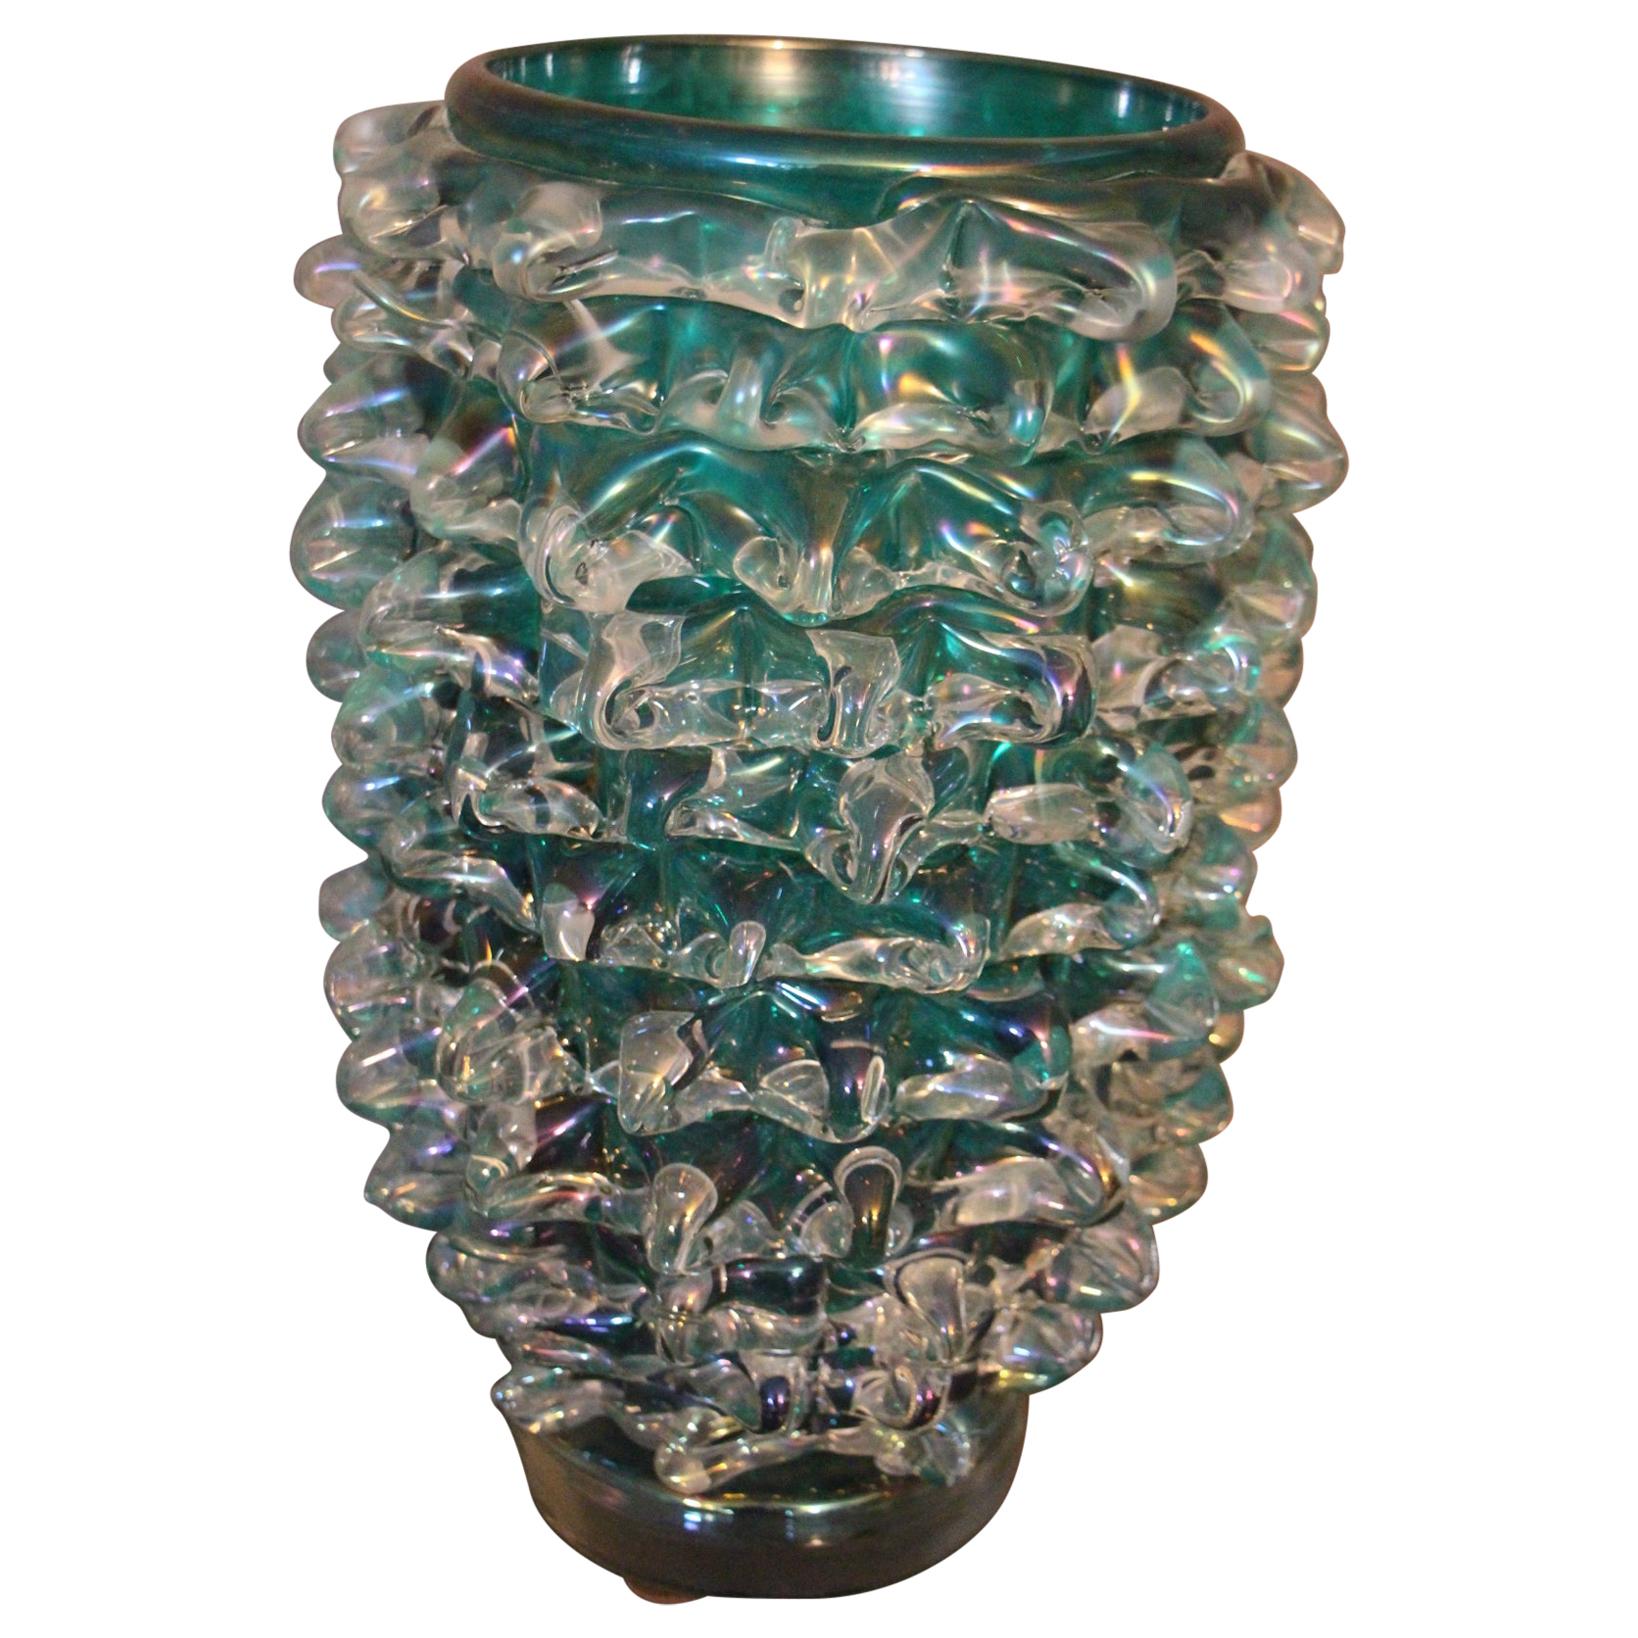 Hohe Vase aus blau-grün schillerndem Murano-Glas mit Rostrato-Spikes Dekor